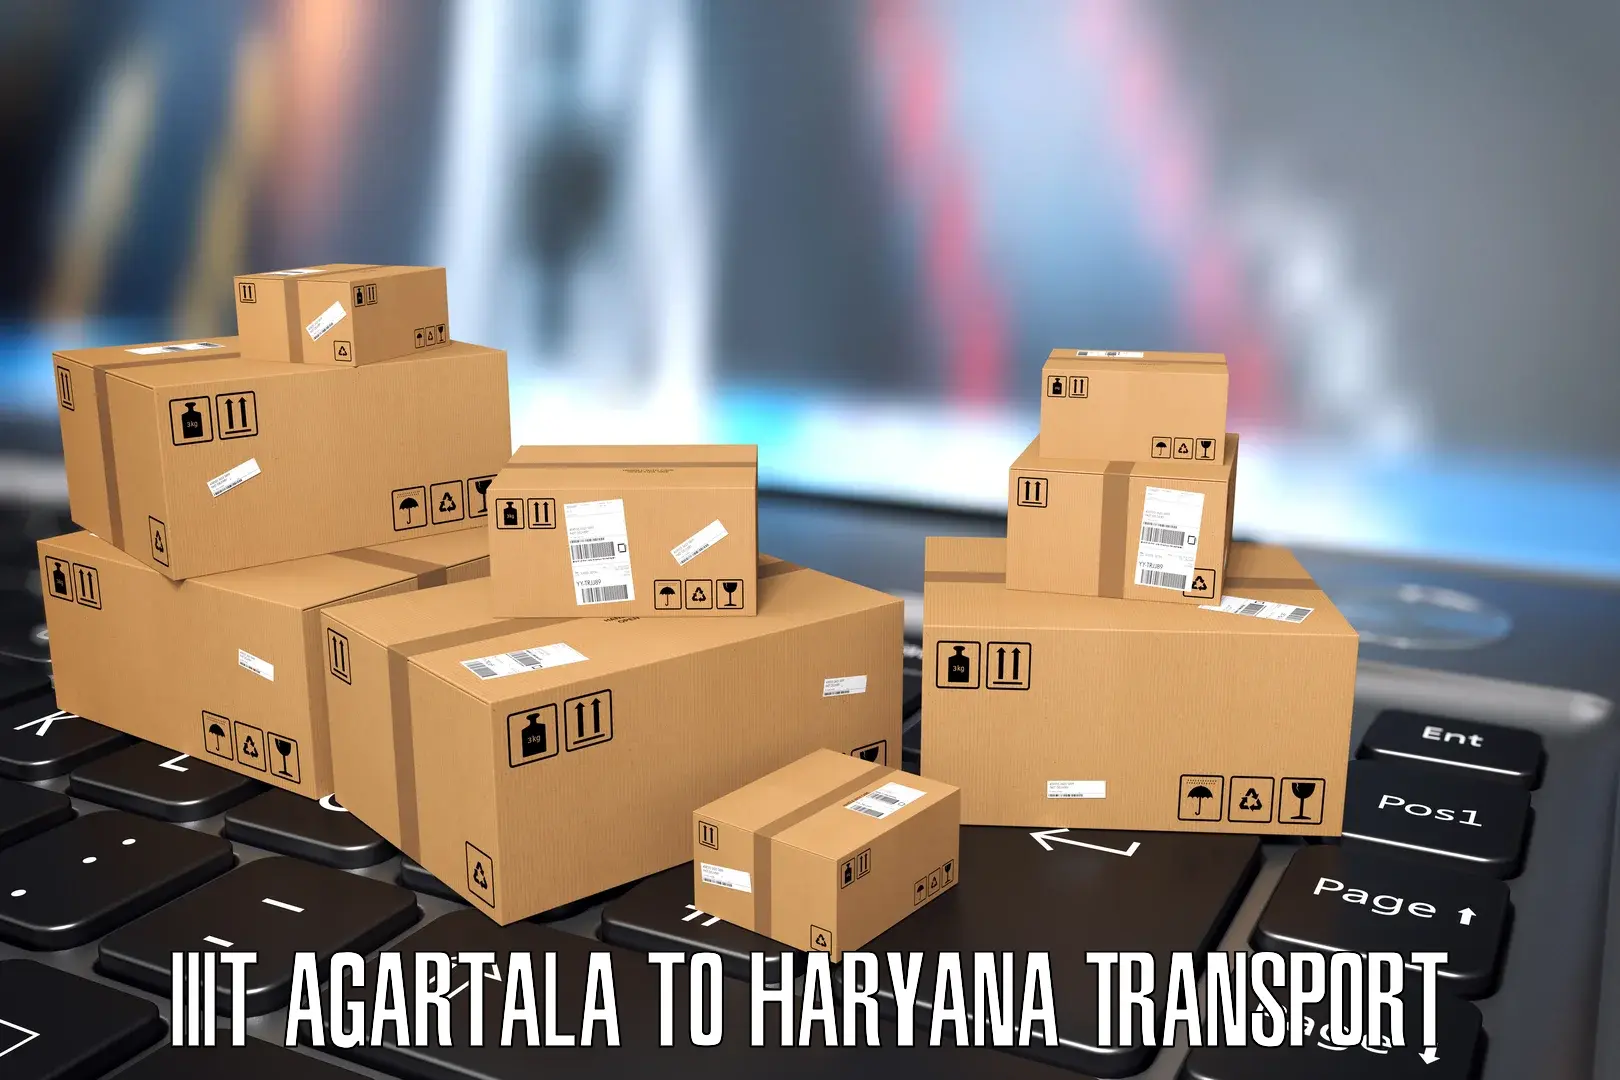 Nearest transport service IIIT Agartala to Hisar